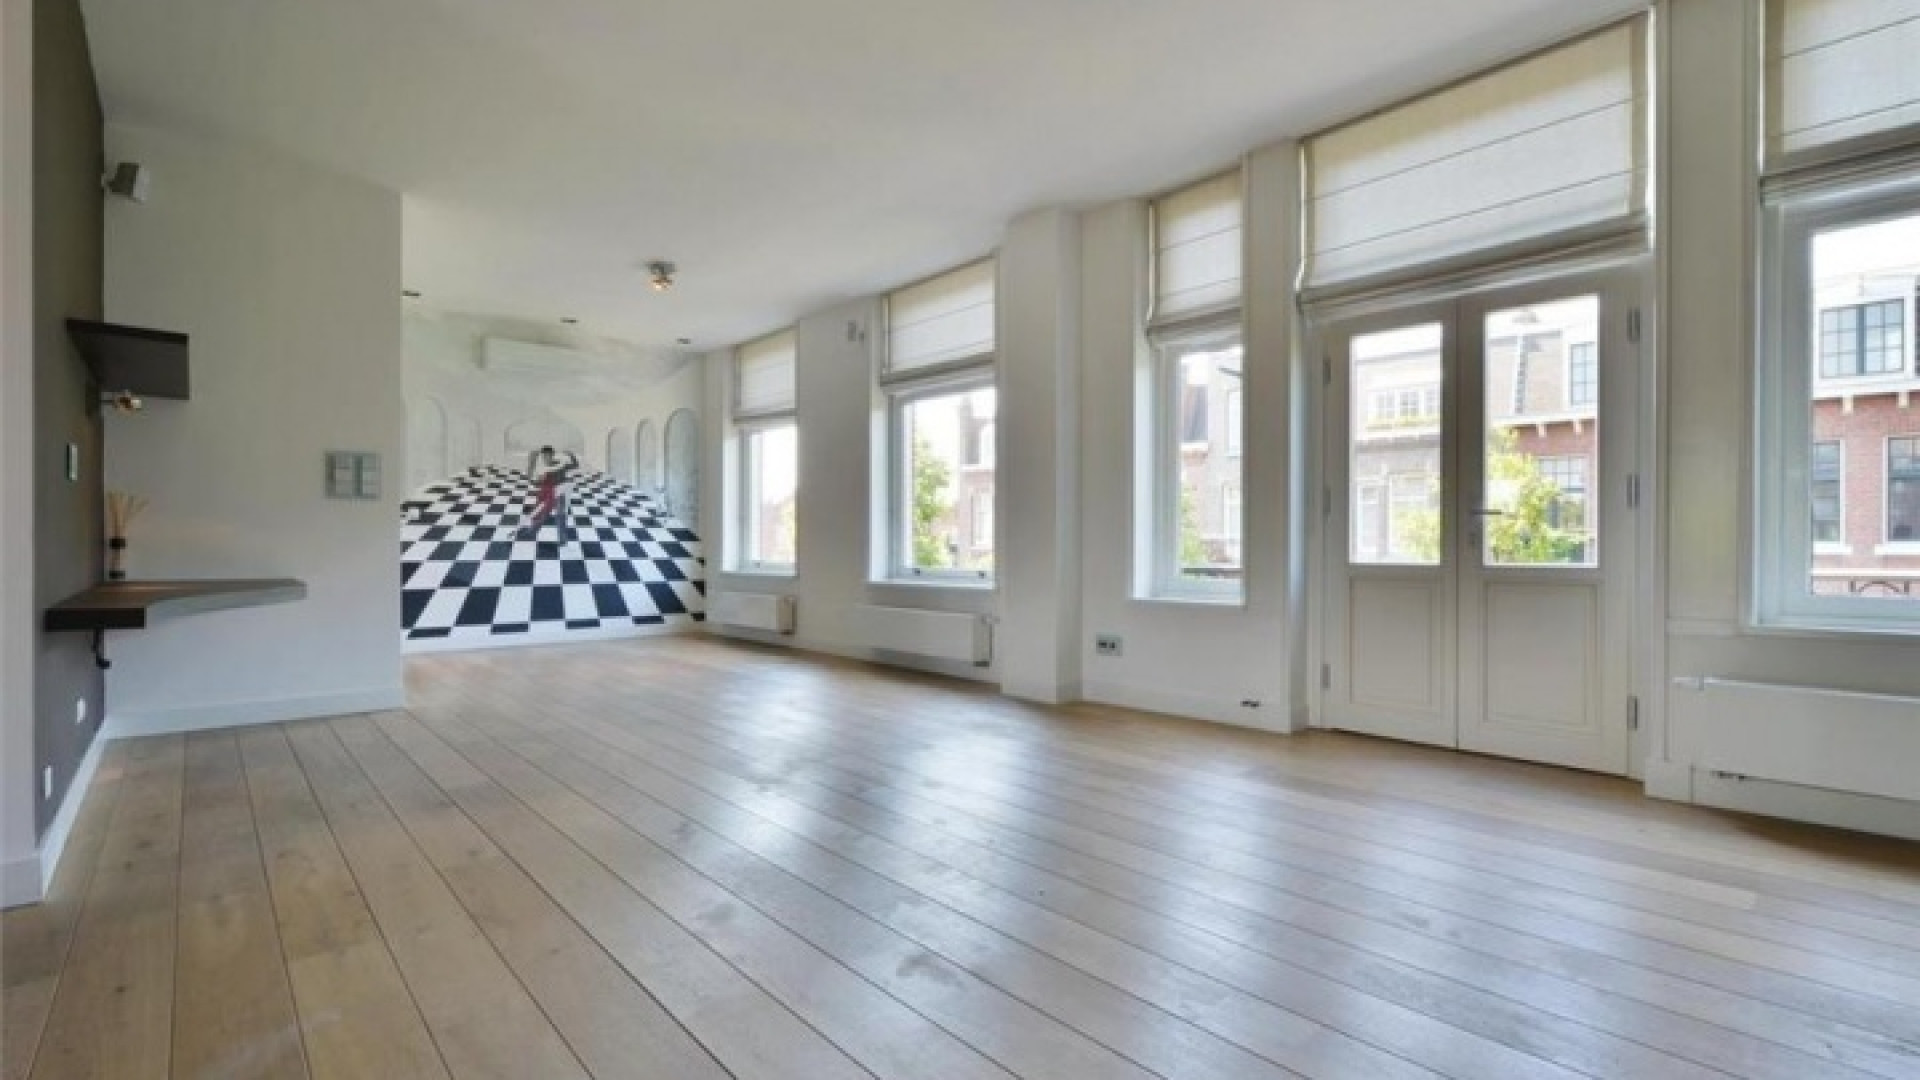 Frank Rijkaard zoekt huurder voor zijn luxe dubbele bovenhuis. Zie foto's 6